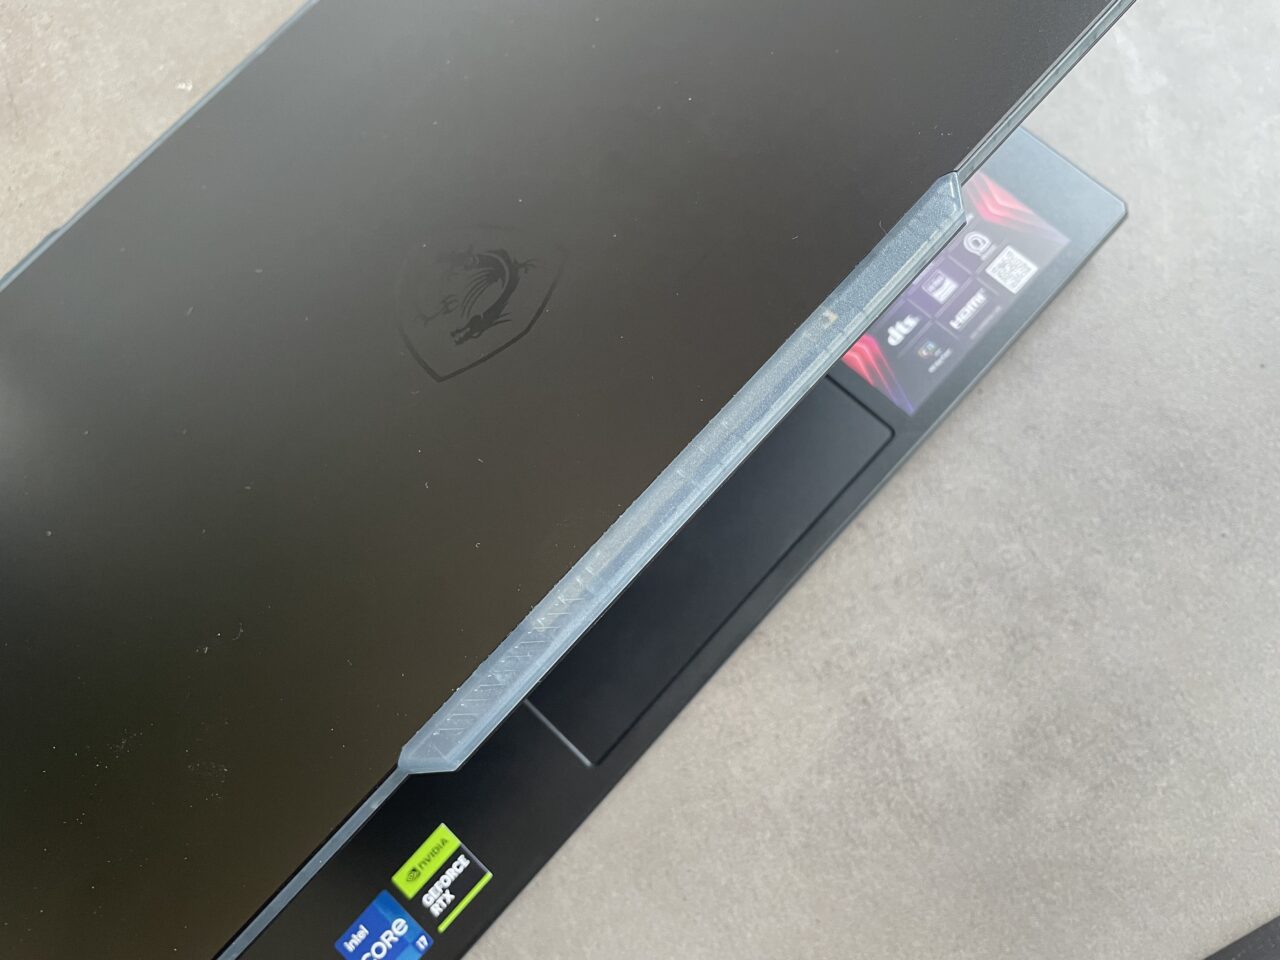 Zamknięty laptop gamingowy z ciemnym wykończeniem i logiem w kształcie smoka na pokrywie, z naklejkami informacyjnymi o specyfikacji na dolnej krawędzi ekranu.